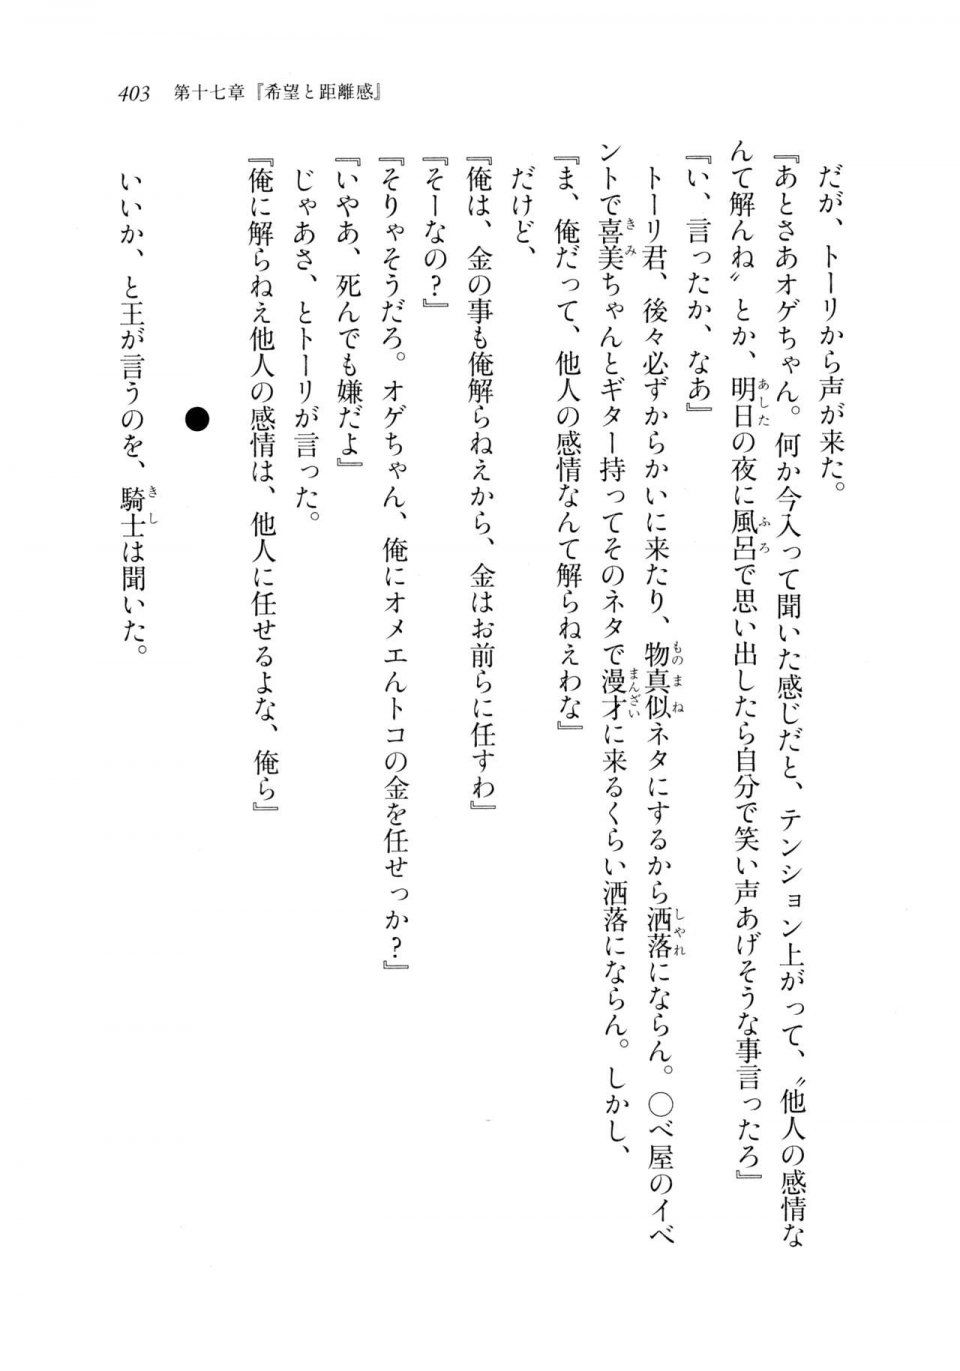 Kyoukai Senjou no Horizon LN Sidestory Vol 2 - Photo #401